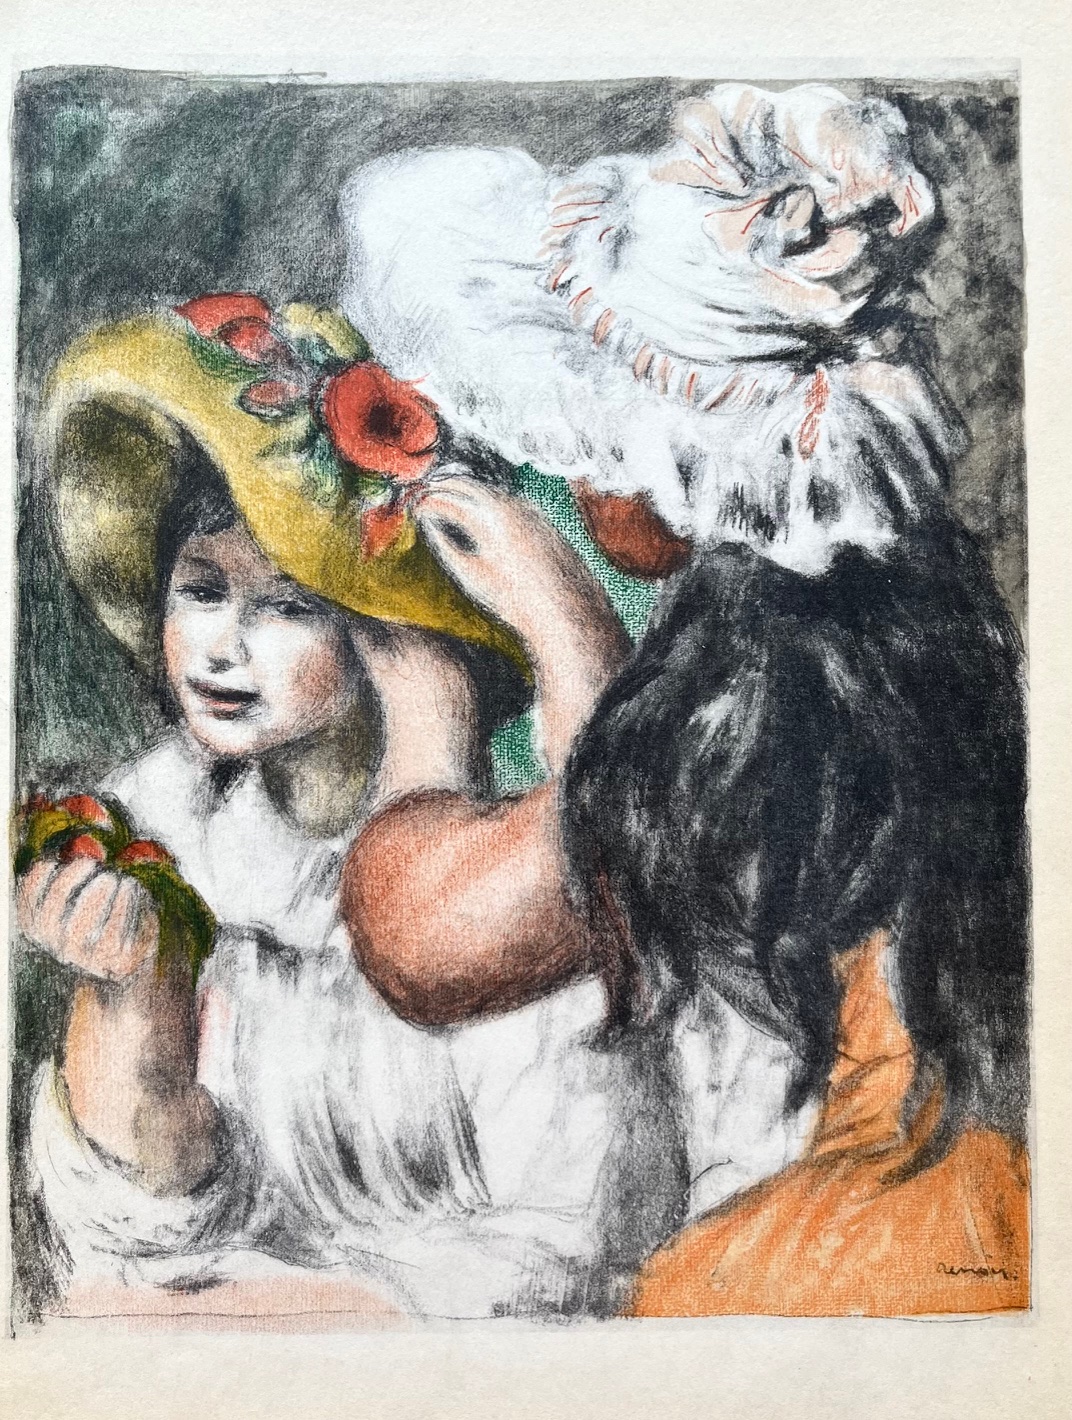 Pierre-Auguste Renoir Lithograph 4 Le Chapeau Epingle - full colors